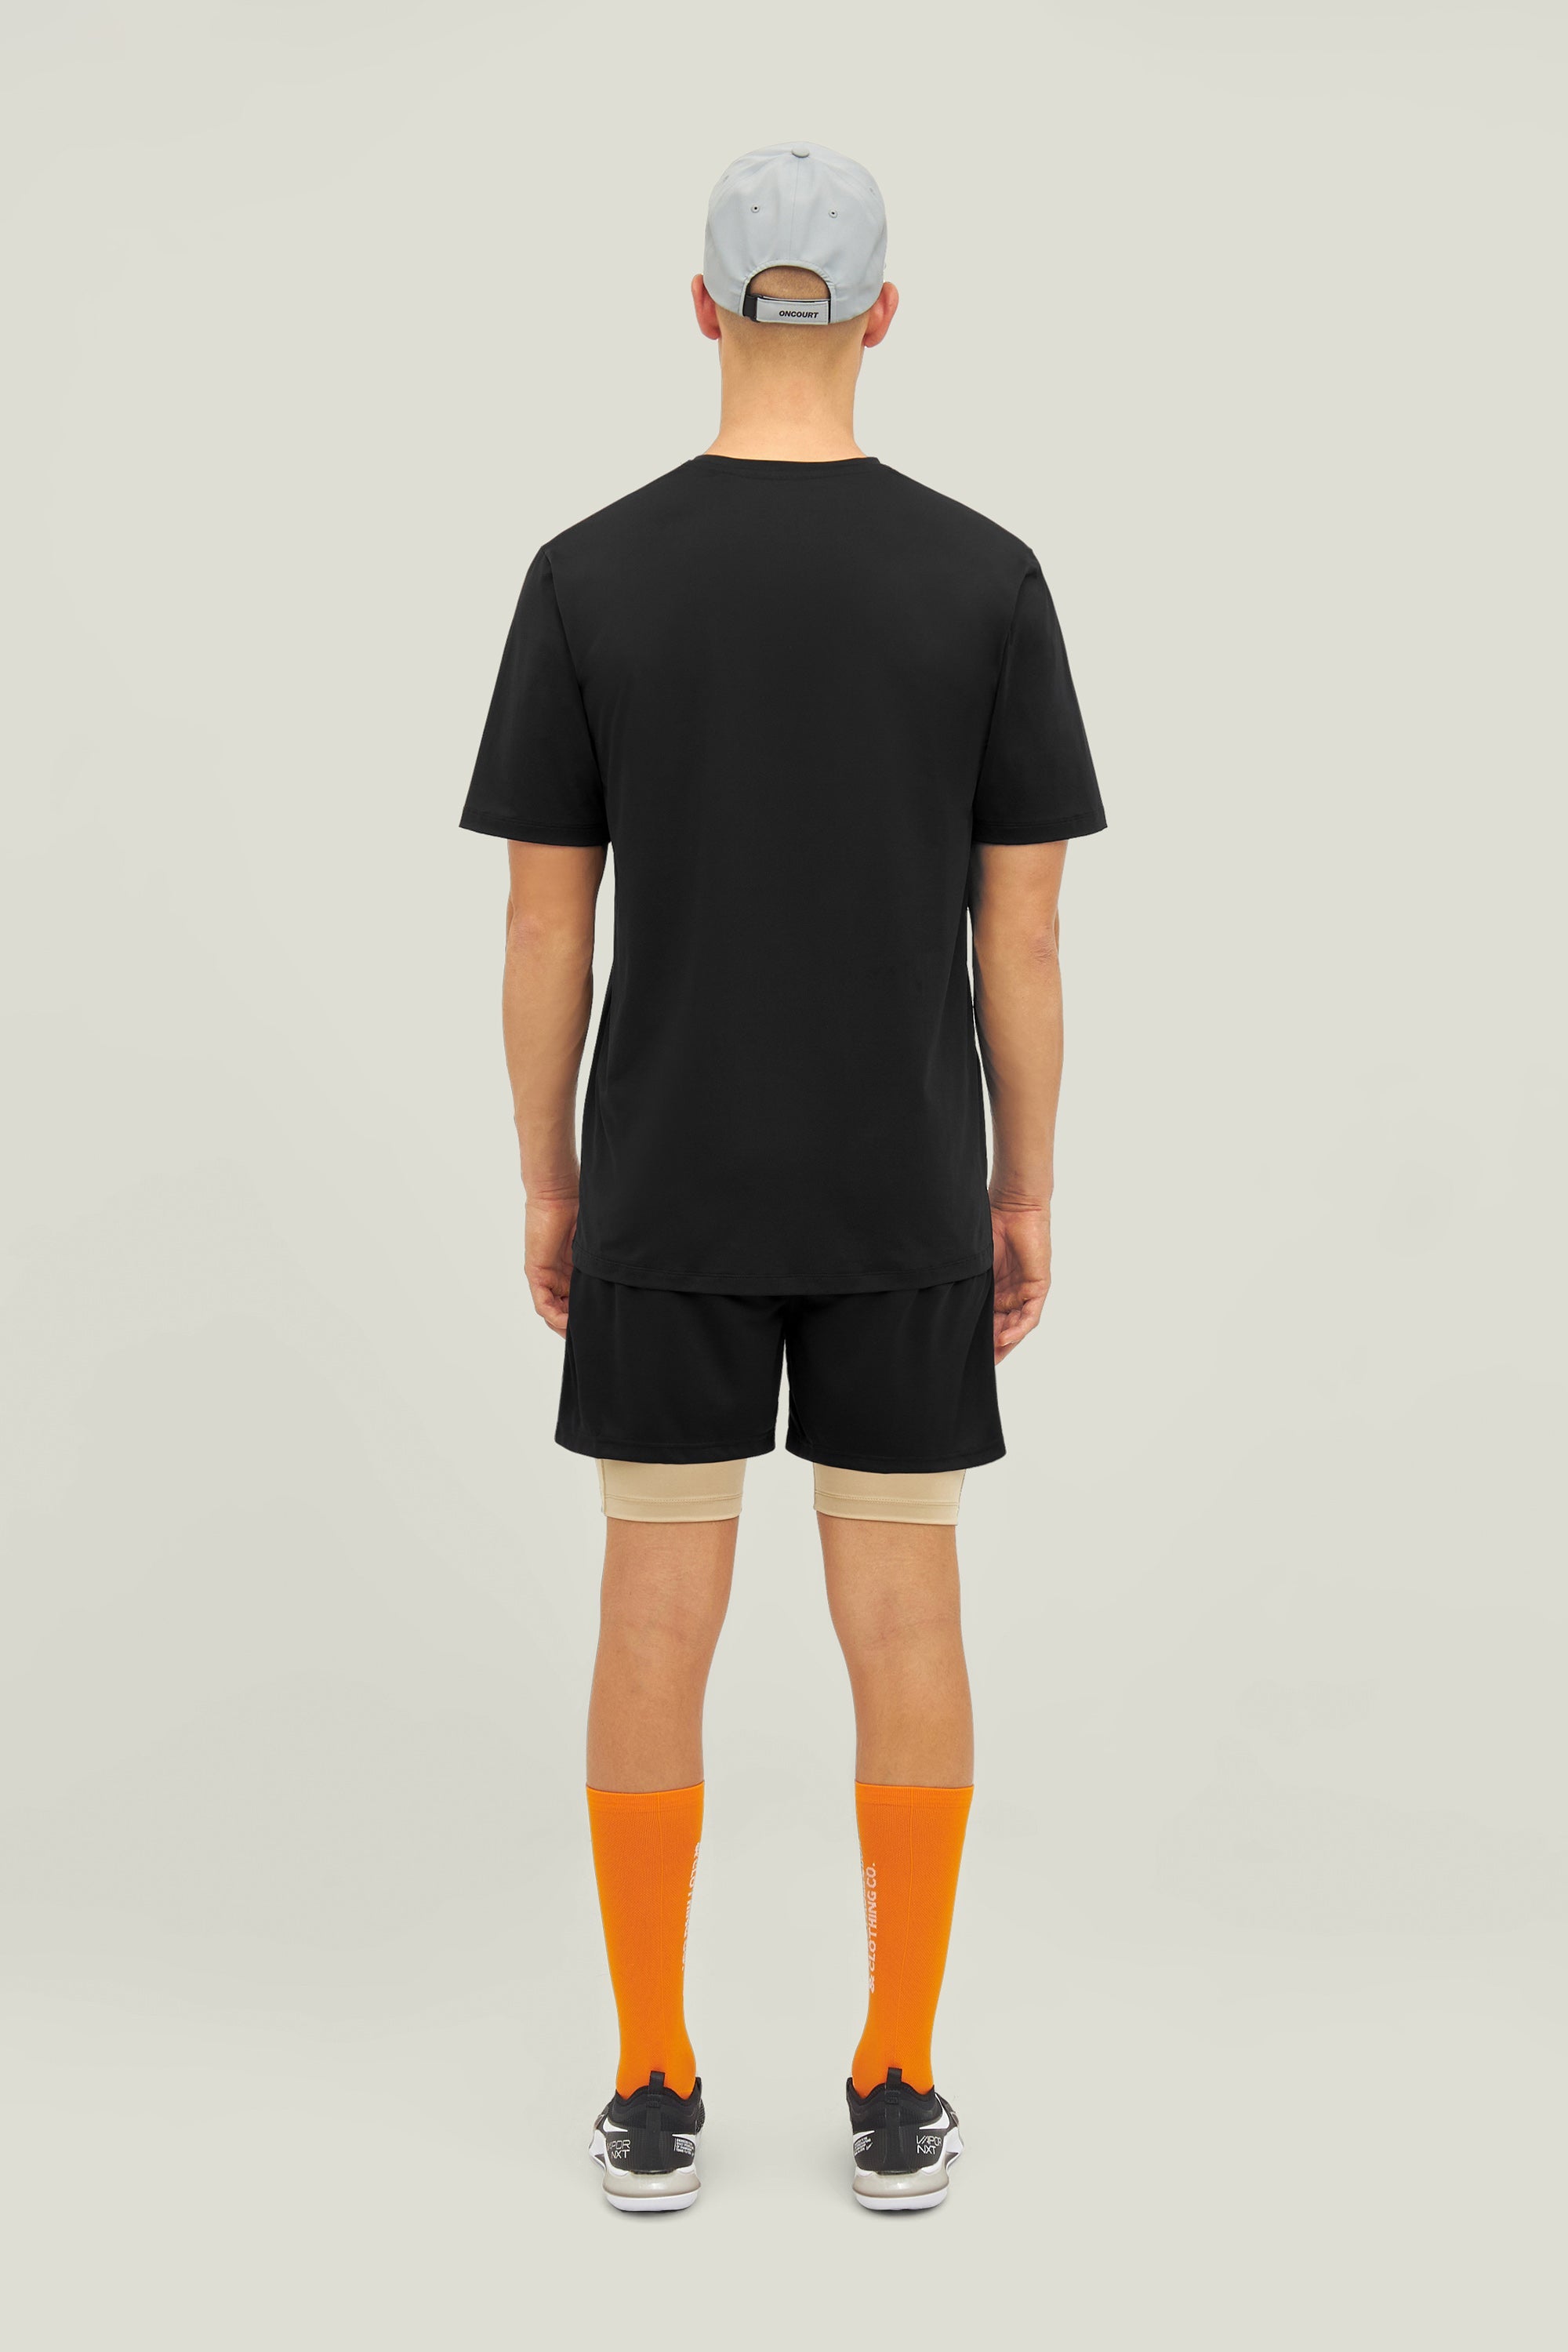 Cuera Oncourt WPC T-shirt (Zwart)